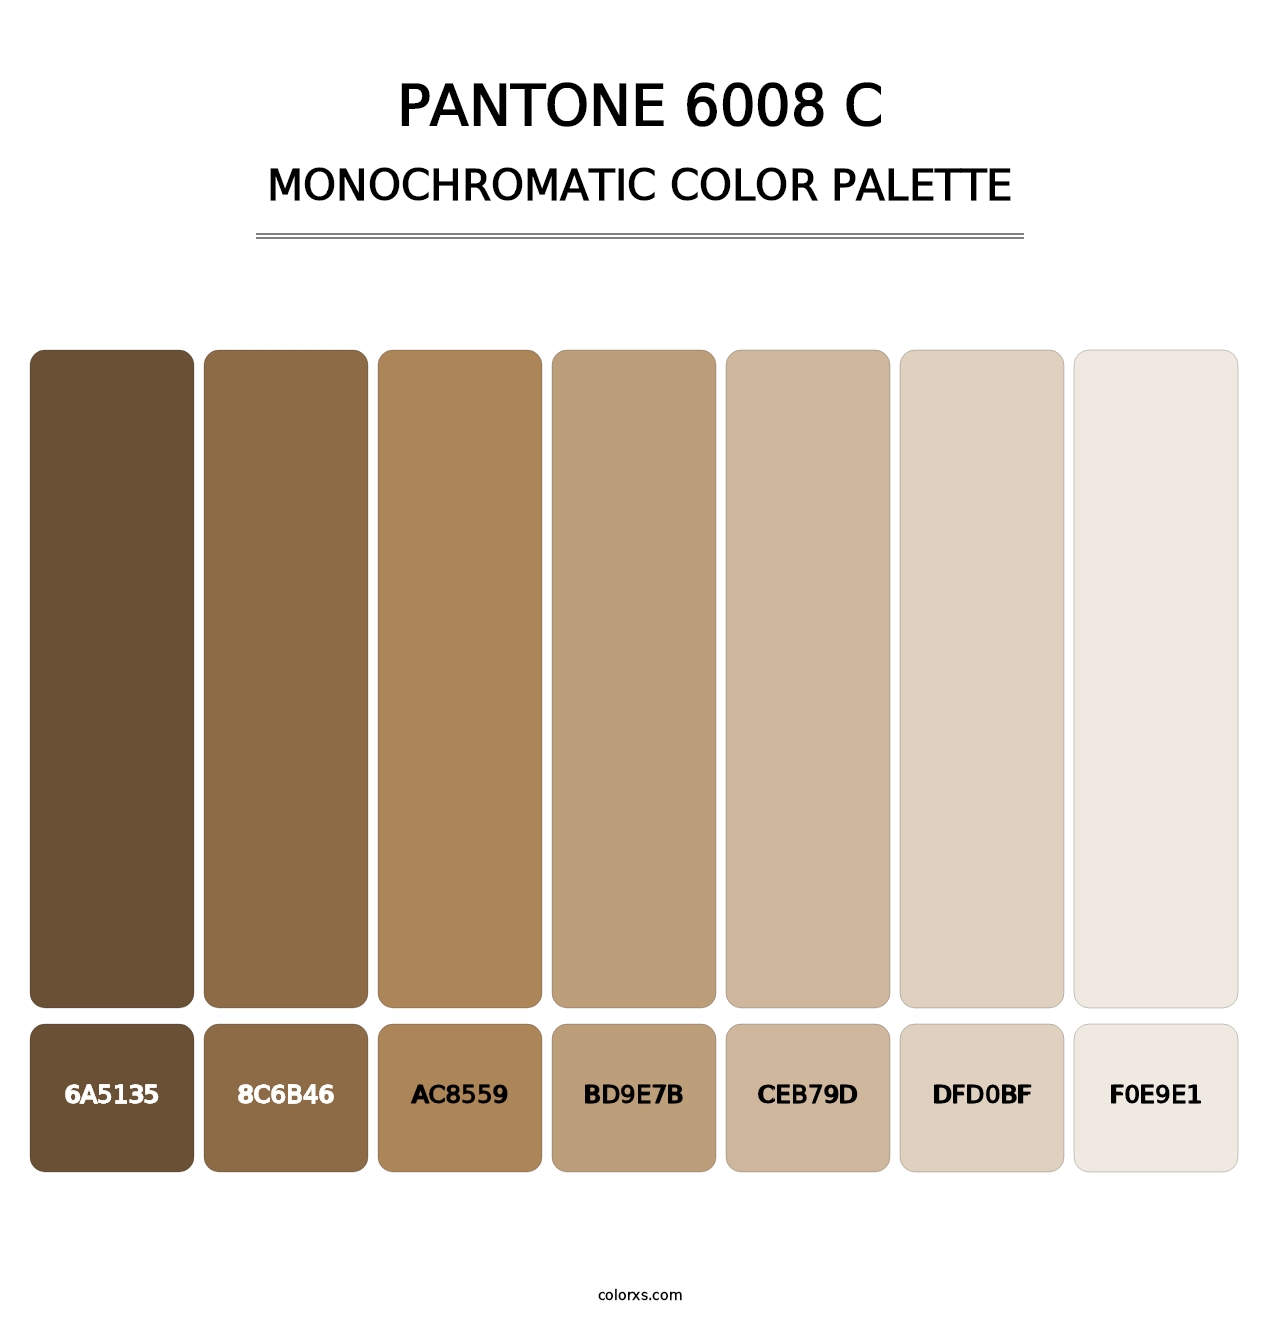 PANTONE 6008 C - Monochromatic Color Palette